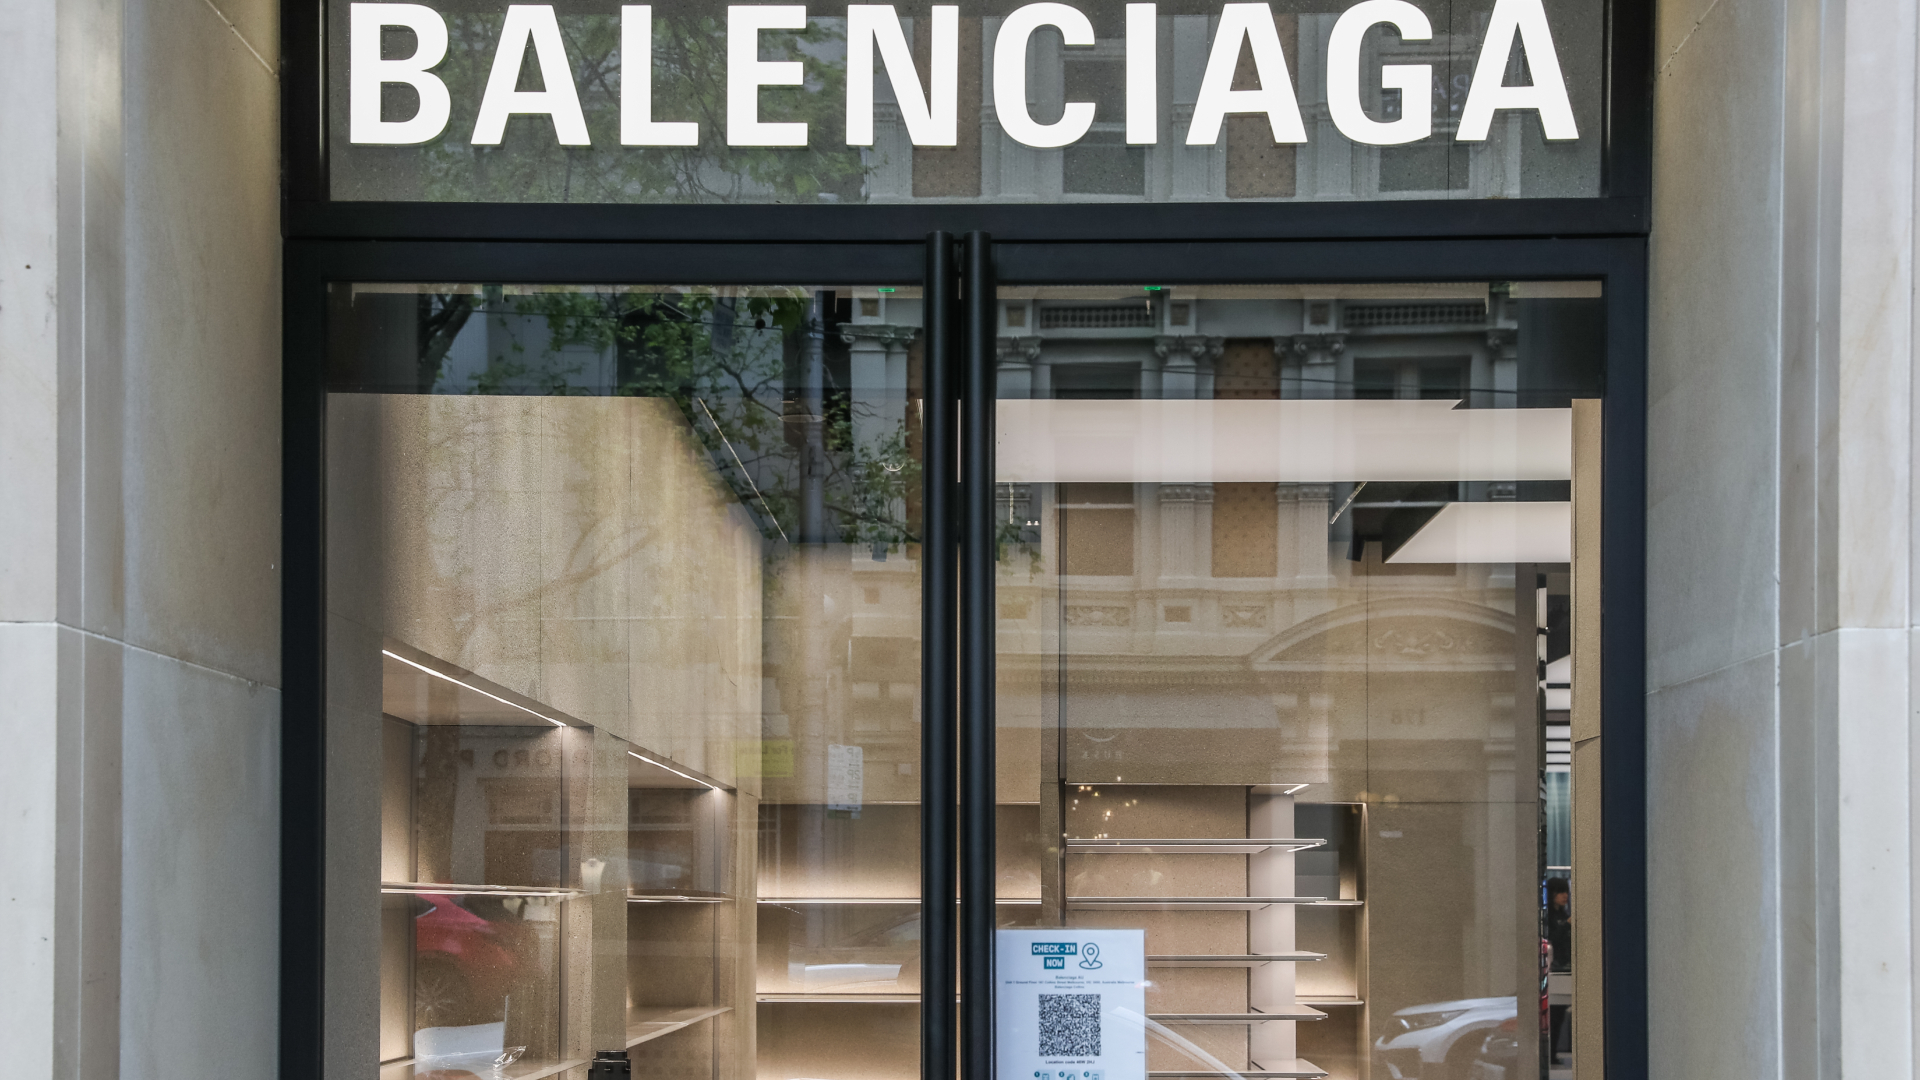 Hướng dẫn order giày Balenciaga ở nước ngoài cực dễ